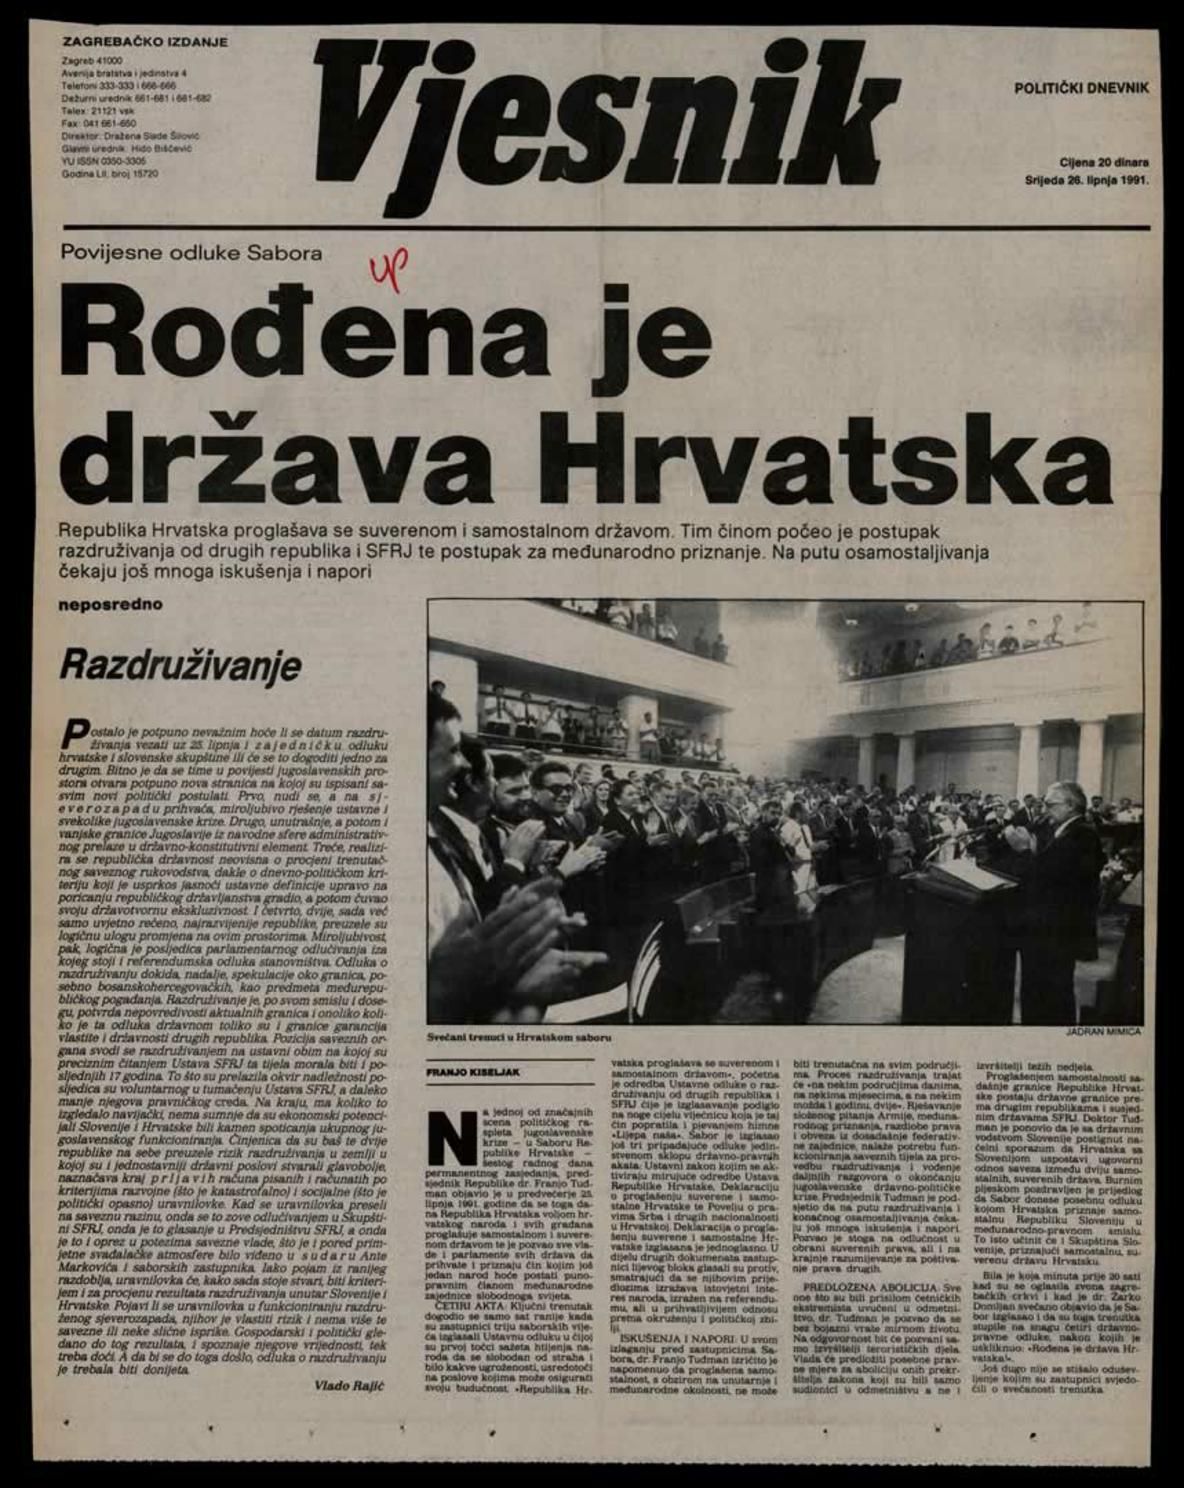 <b>Rođena je država Hrvatska</b>, naslovnica <i>Vjesnika</i>, 26. lipnja 1991.
<br><br>
HR-HDA-2031. Vjesnik. Hrvatska, kut. 1286
